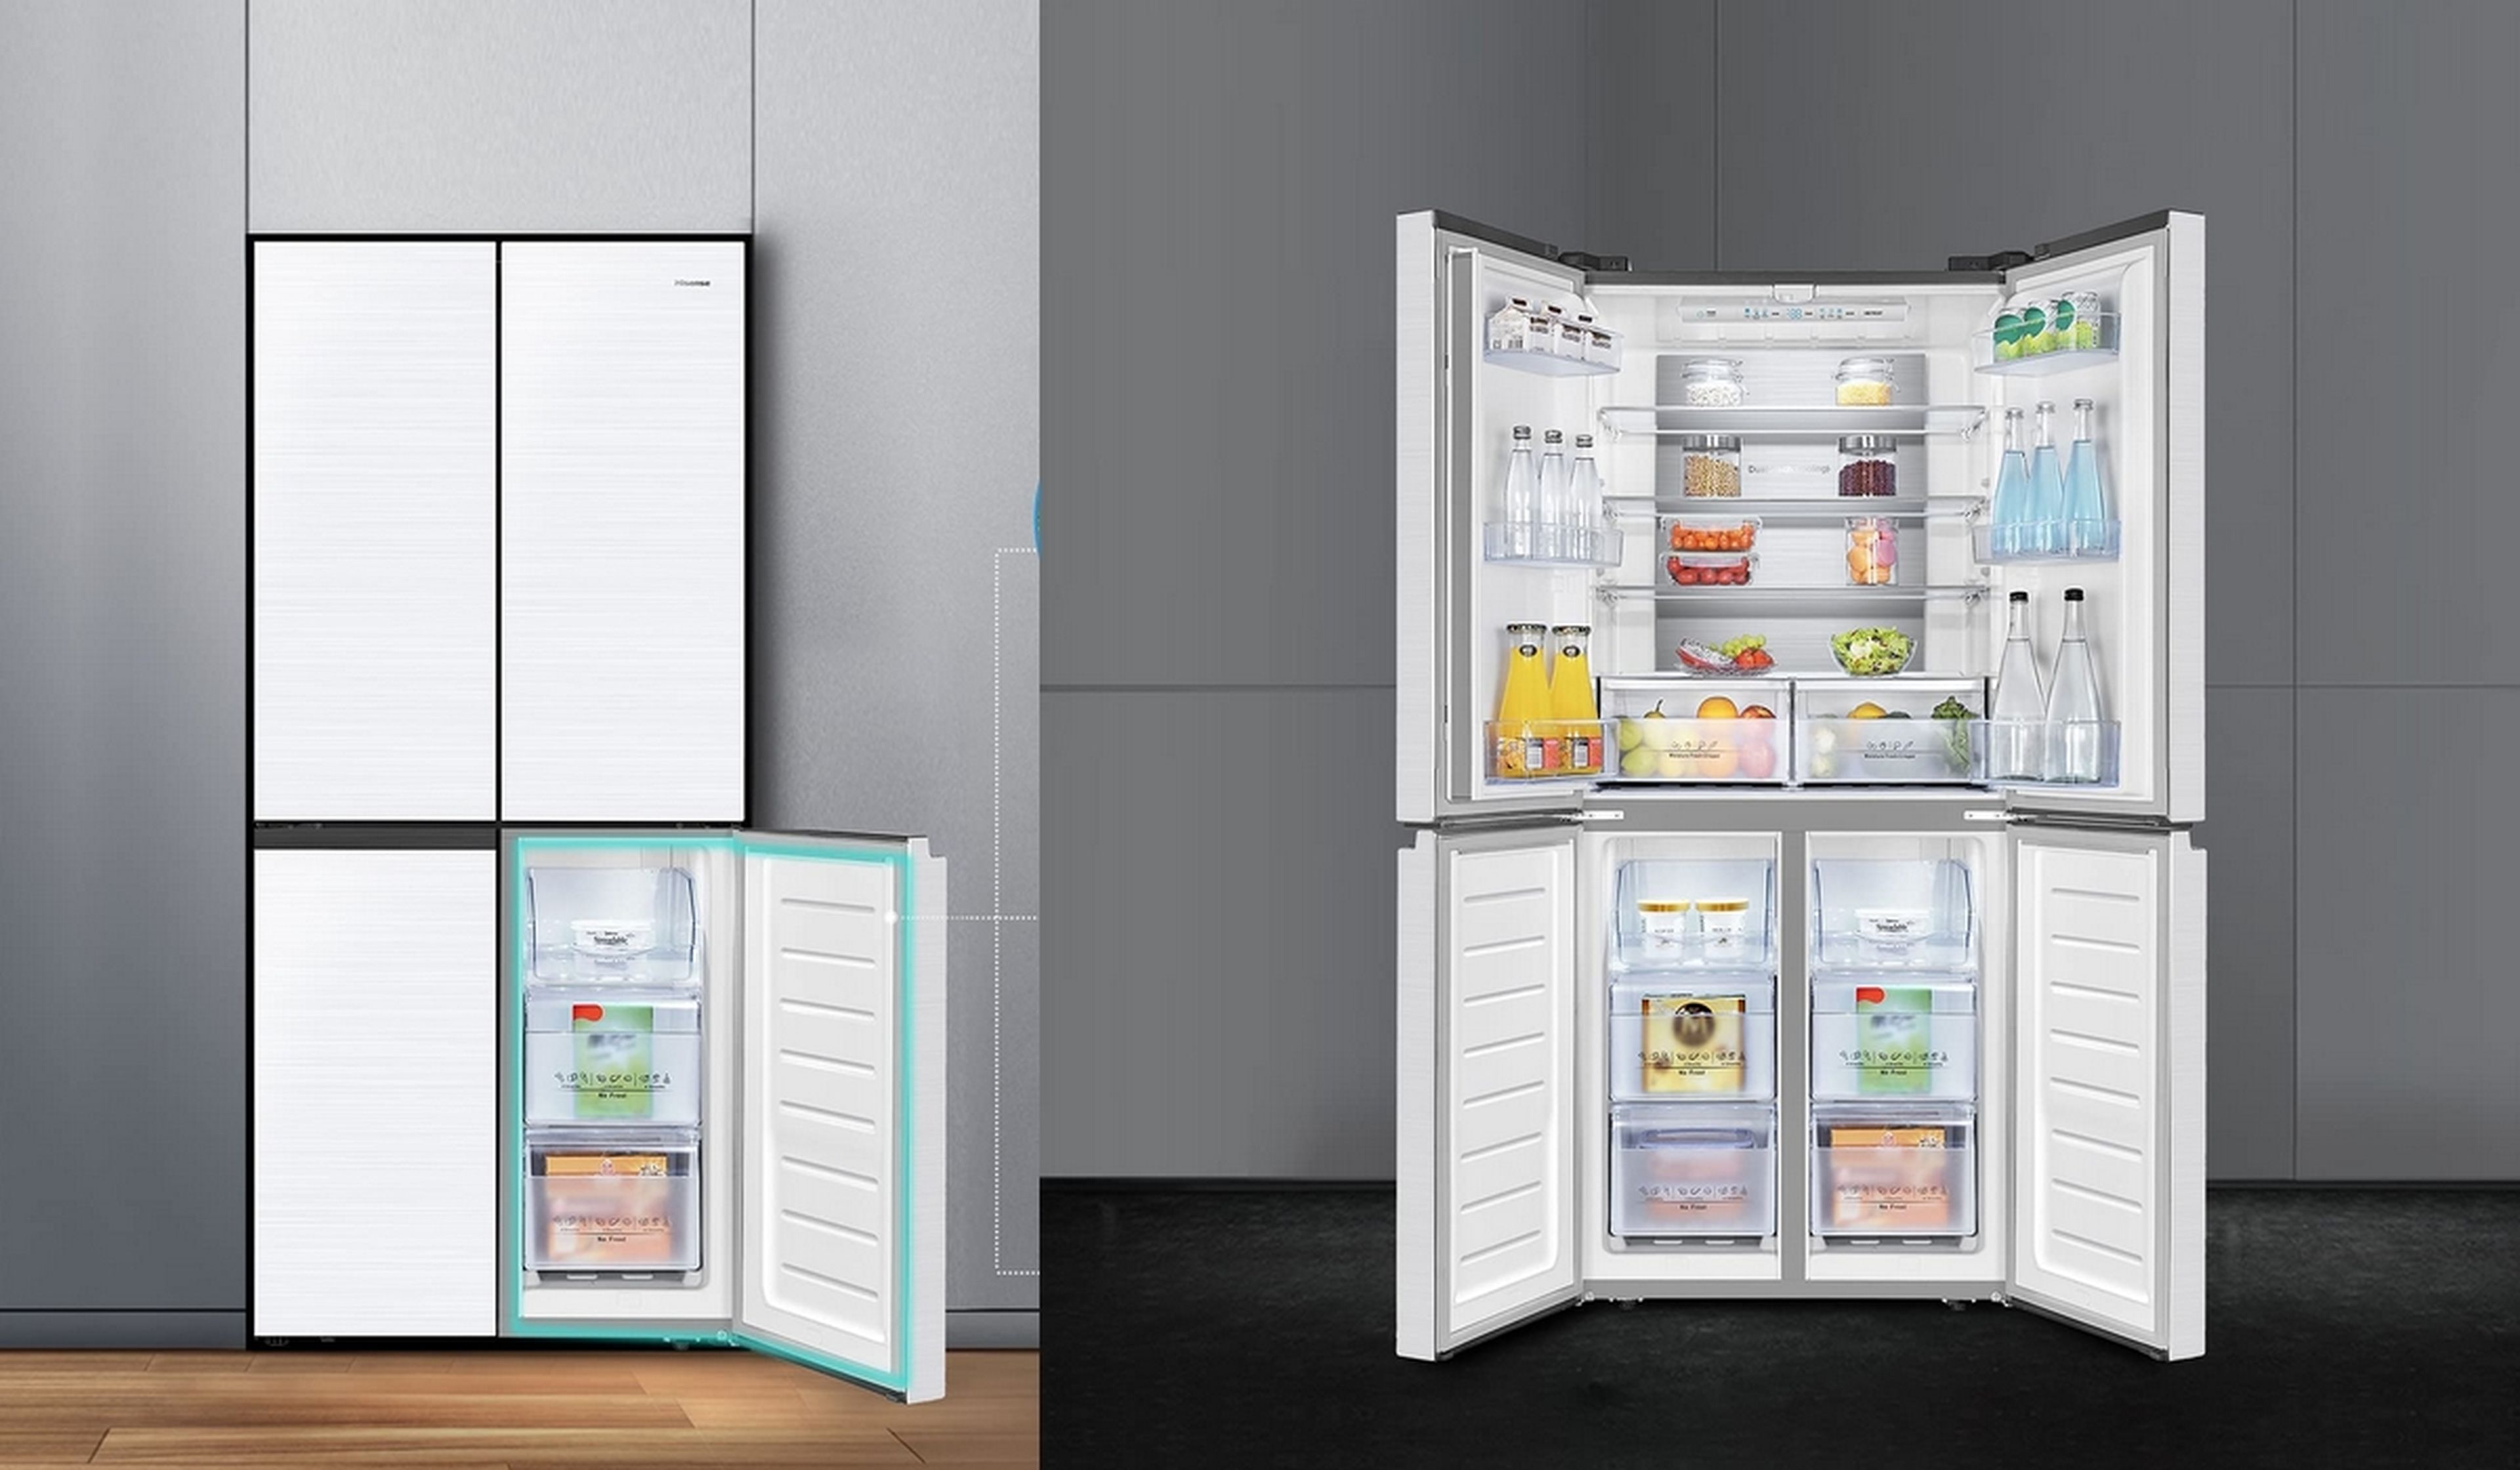 Este frigorífico americano HiSense es un modelo premium, recibe un  descuento de 260 euros y se queda en solo 719 euros